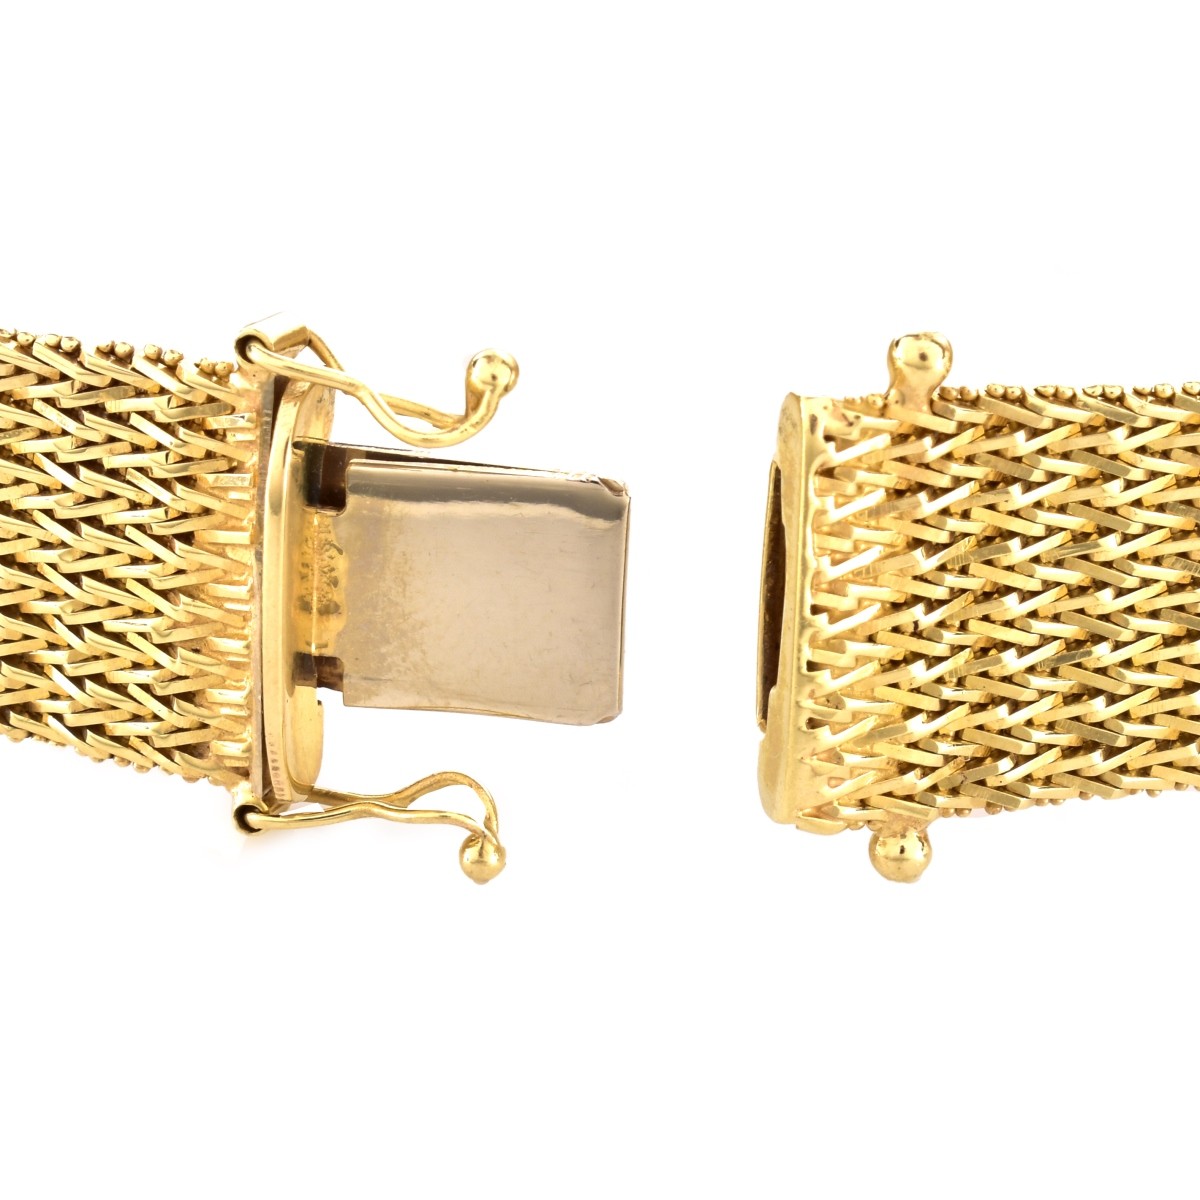 Vintage 14K Gold Mesh Bracelet